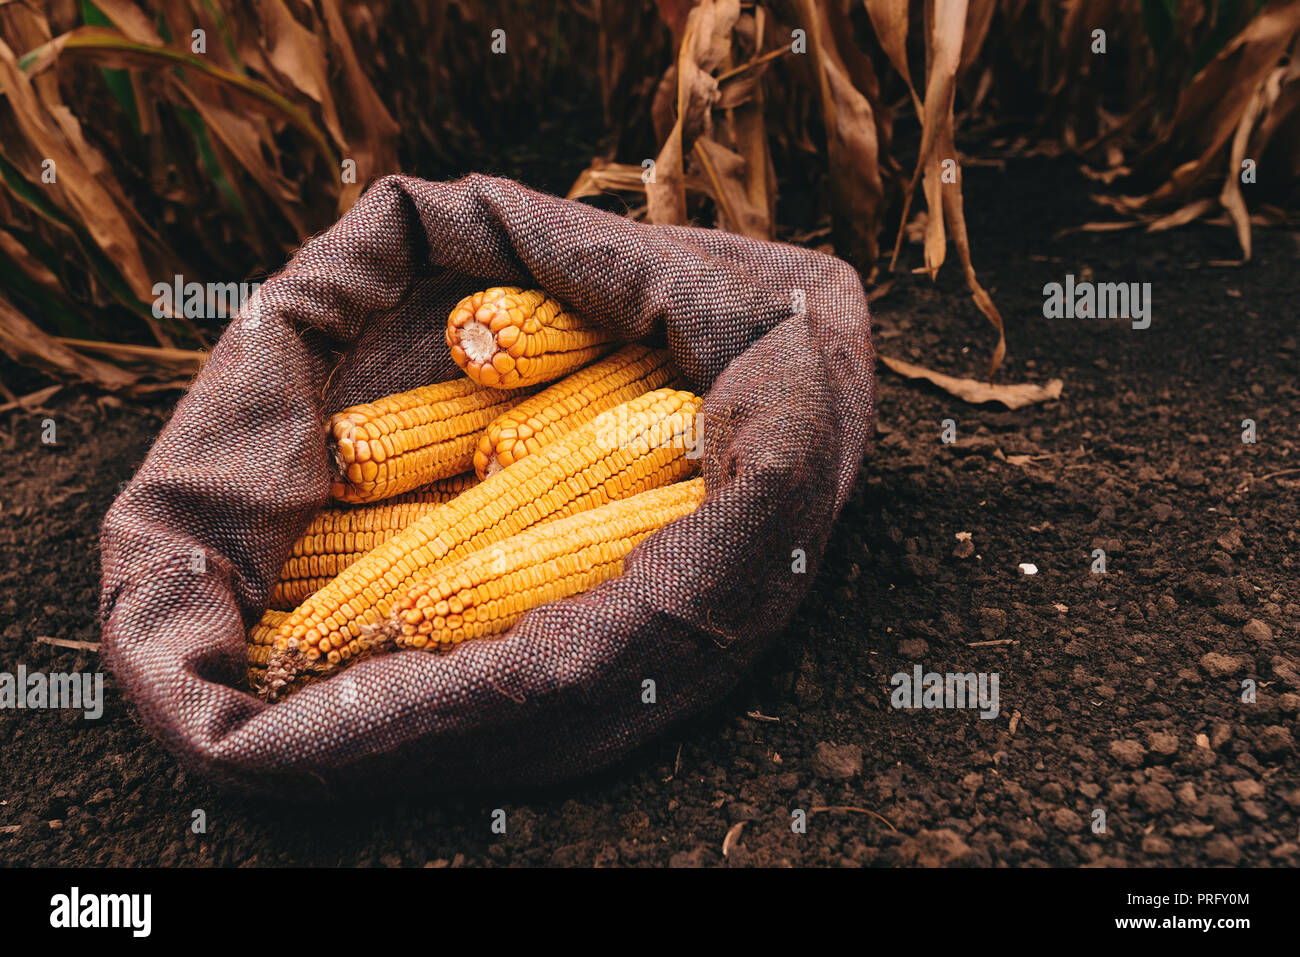 Plenty of harvested corn cobs in burlap sack left in the field Stock Photo